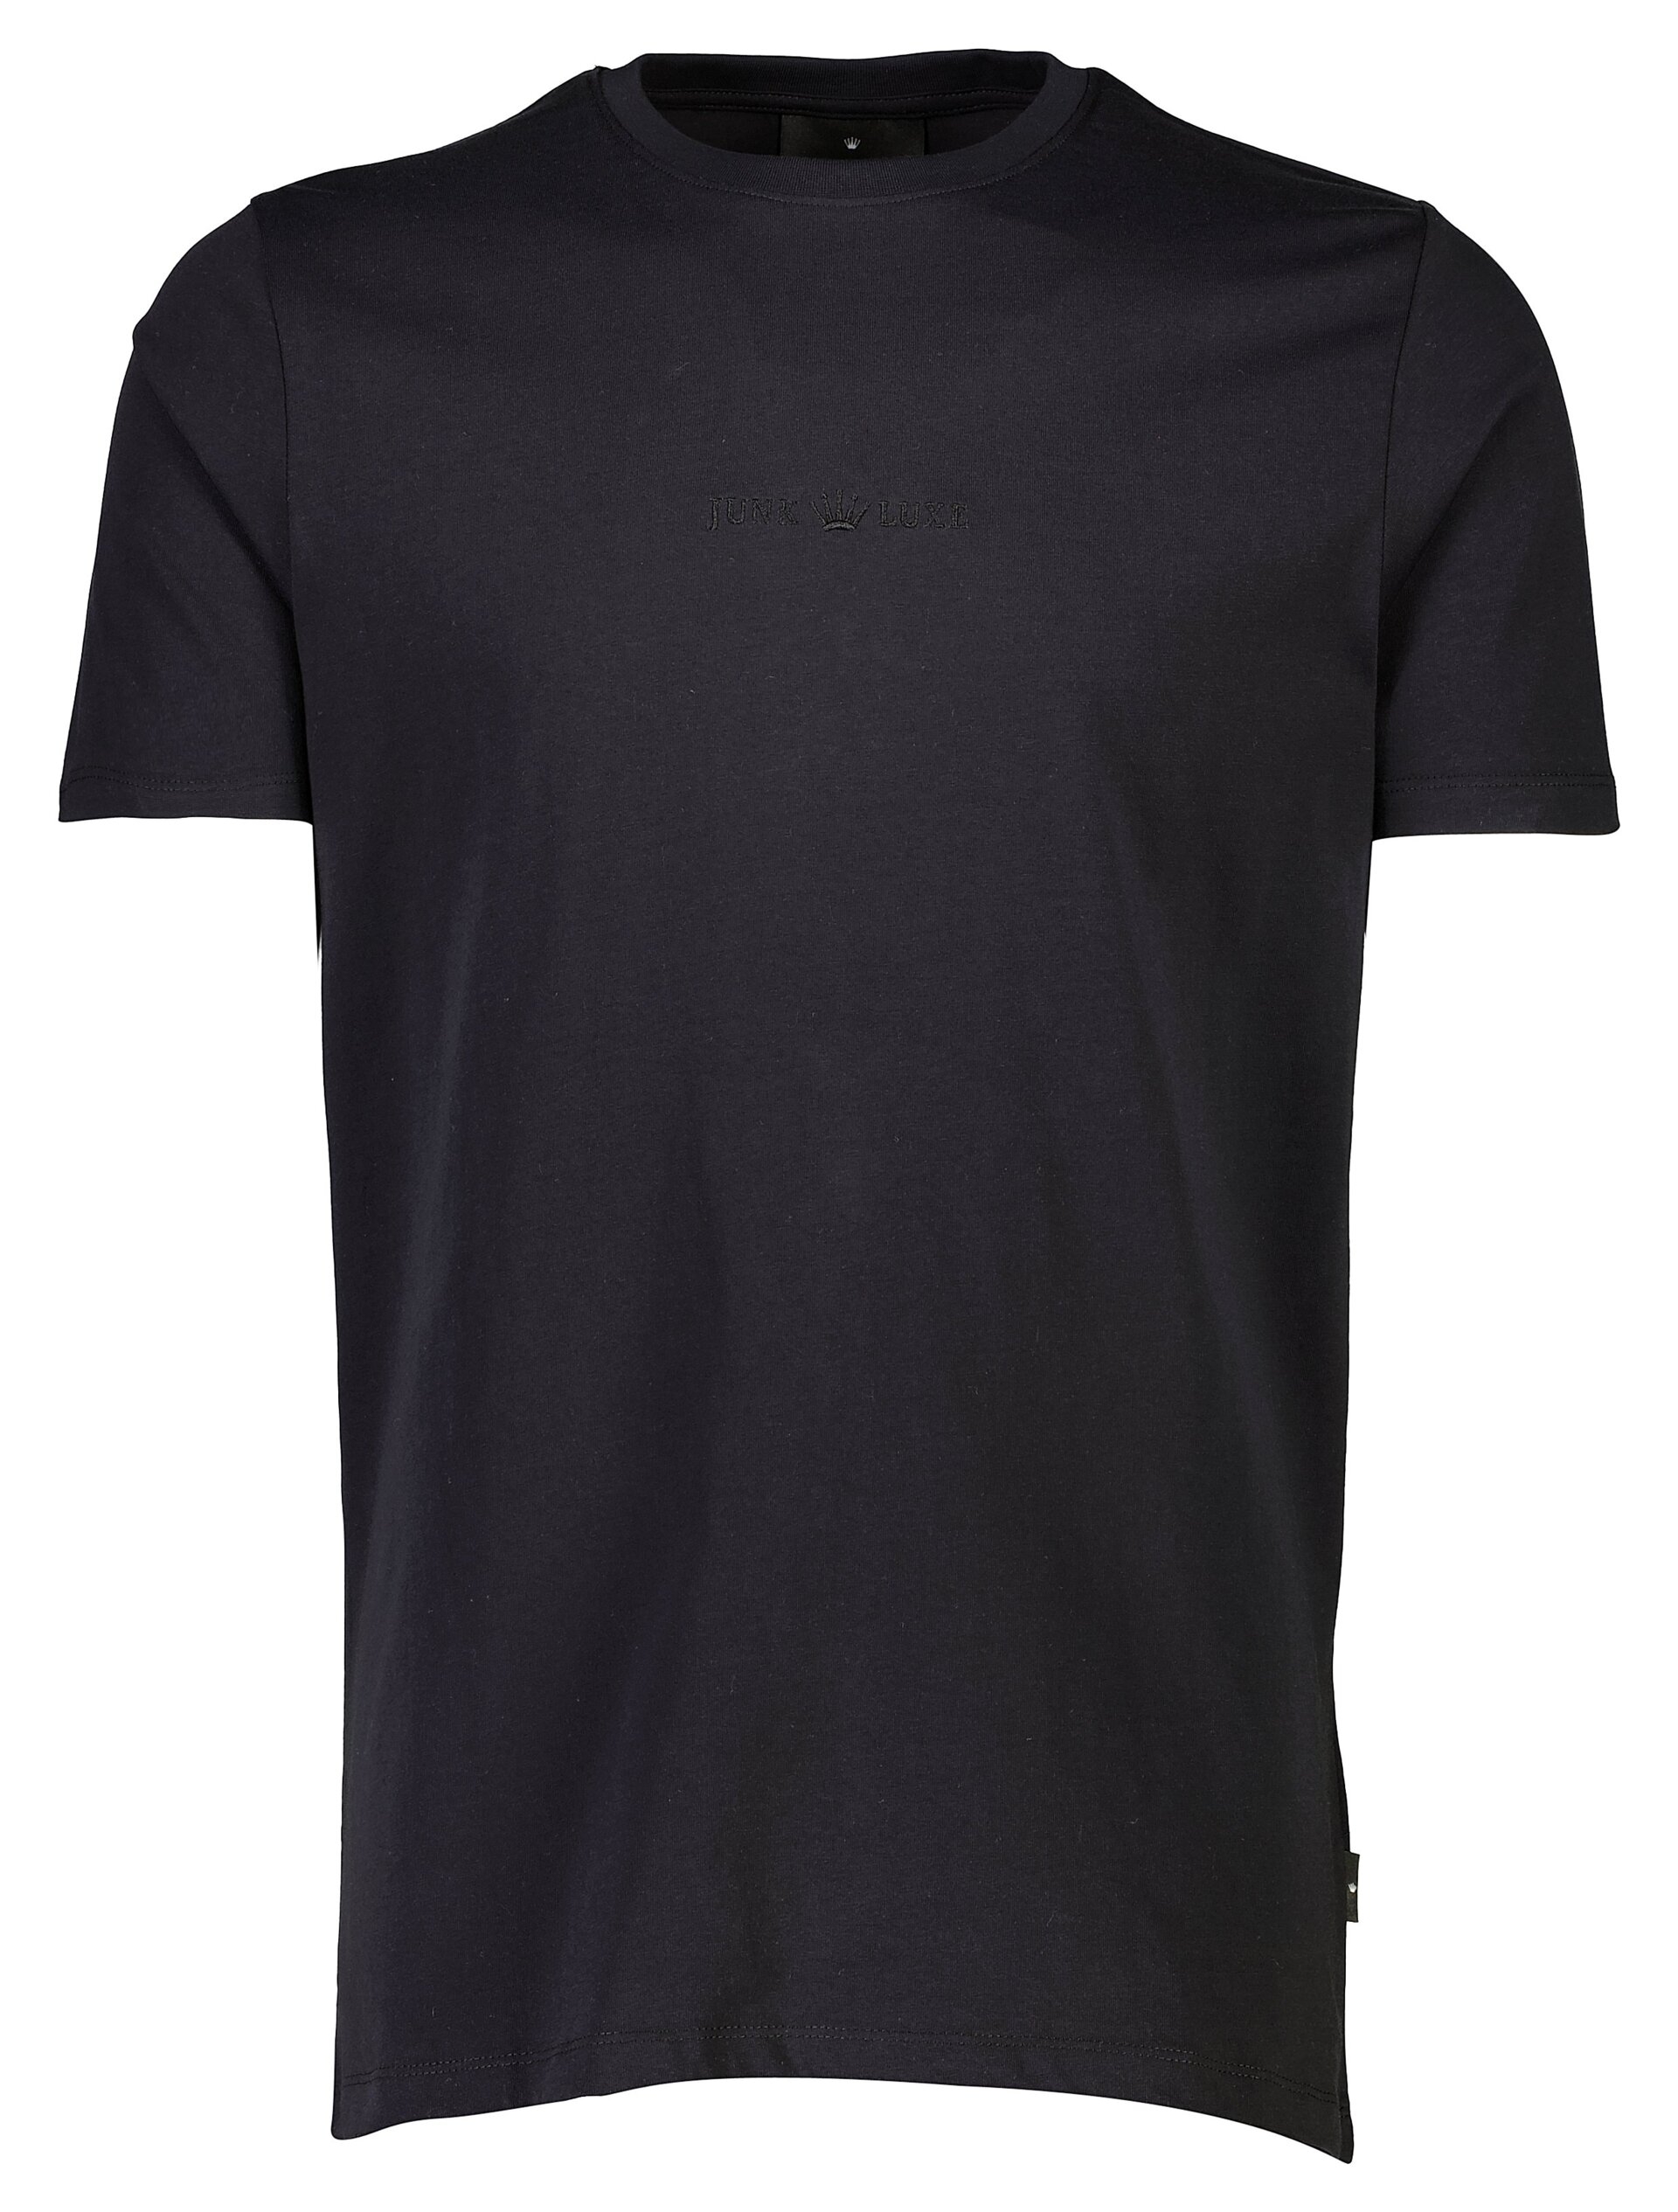 Junk de Luxe T-shirt sort / black